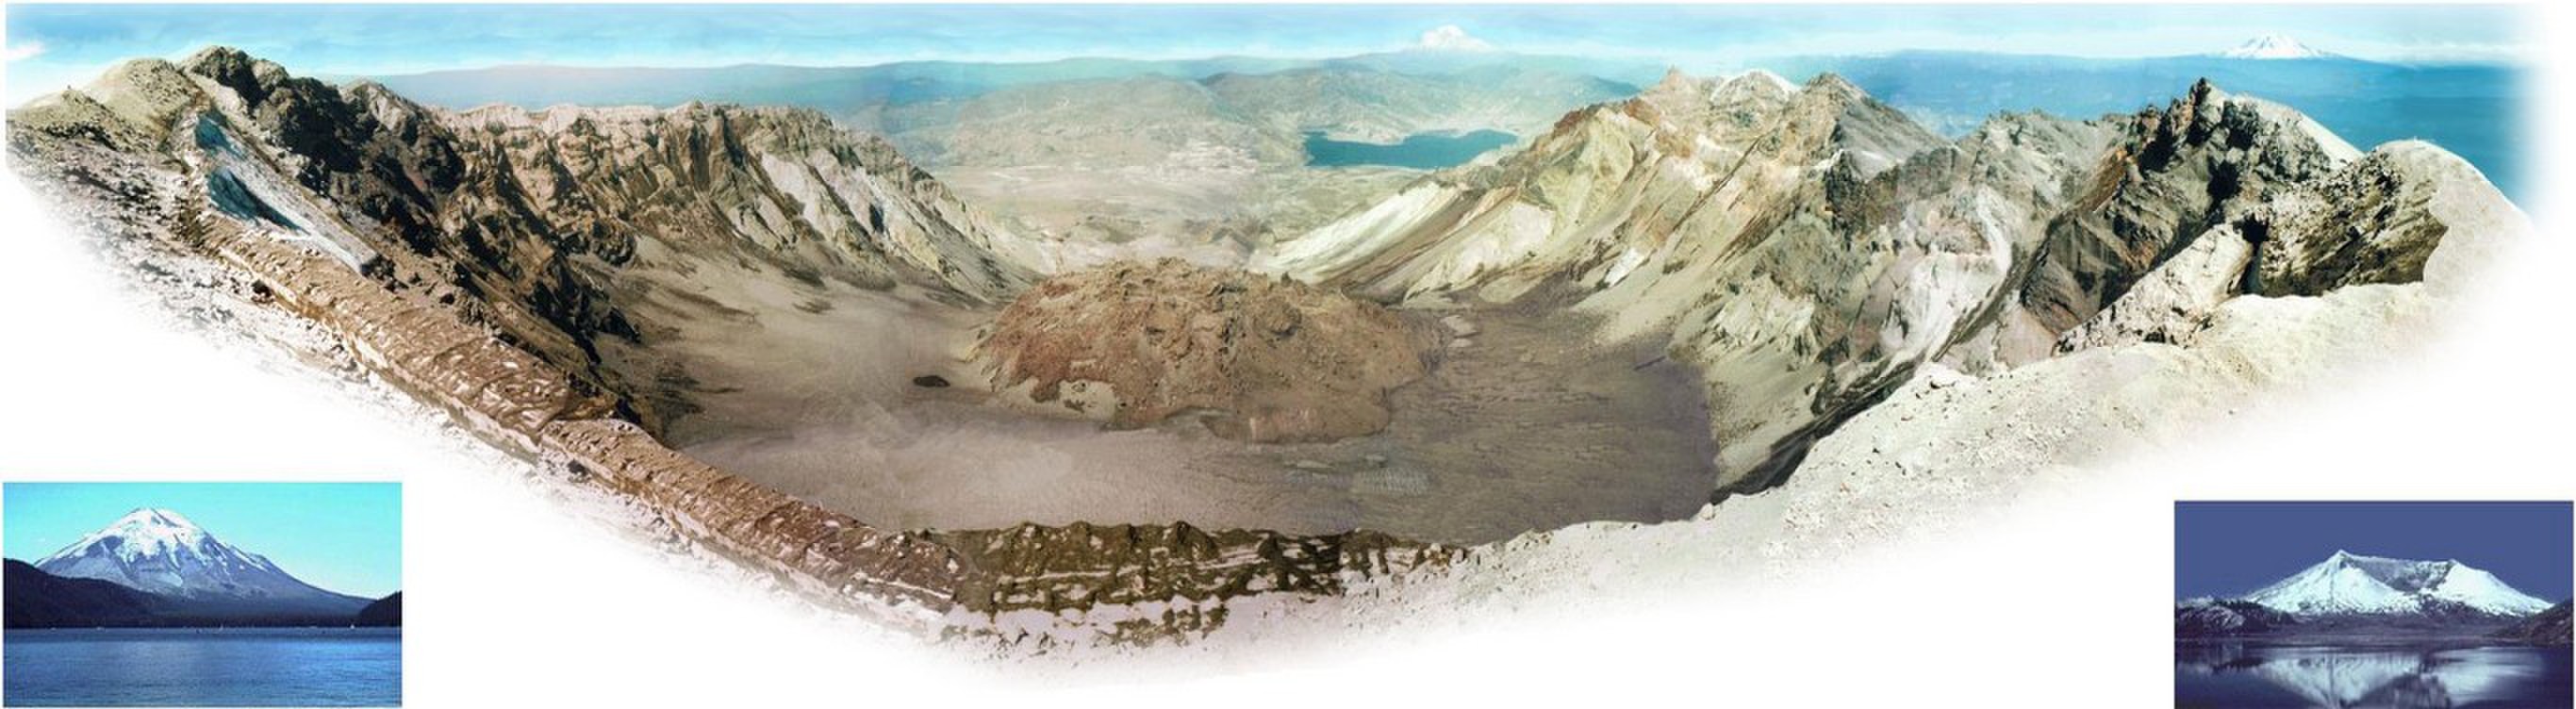 從照片上可以看出聖海倫火山爆發前後的不同